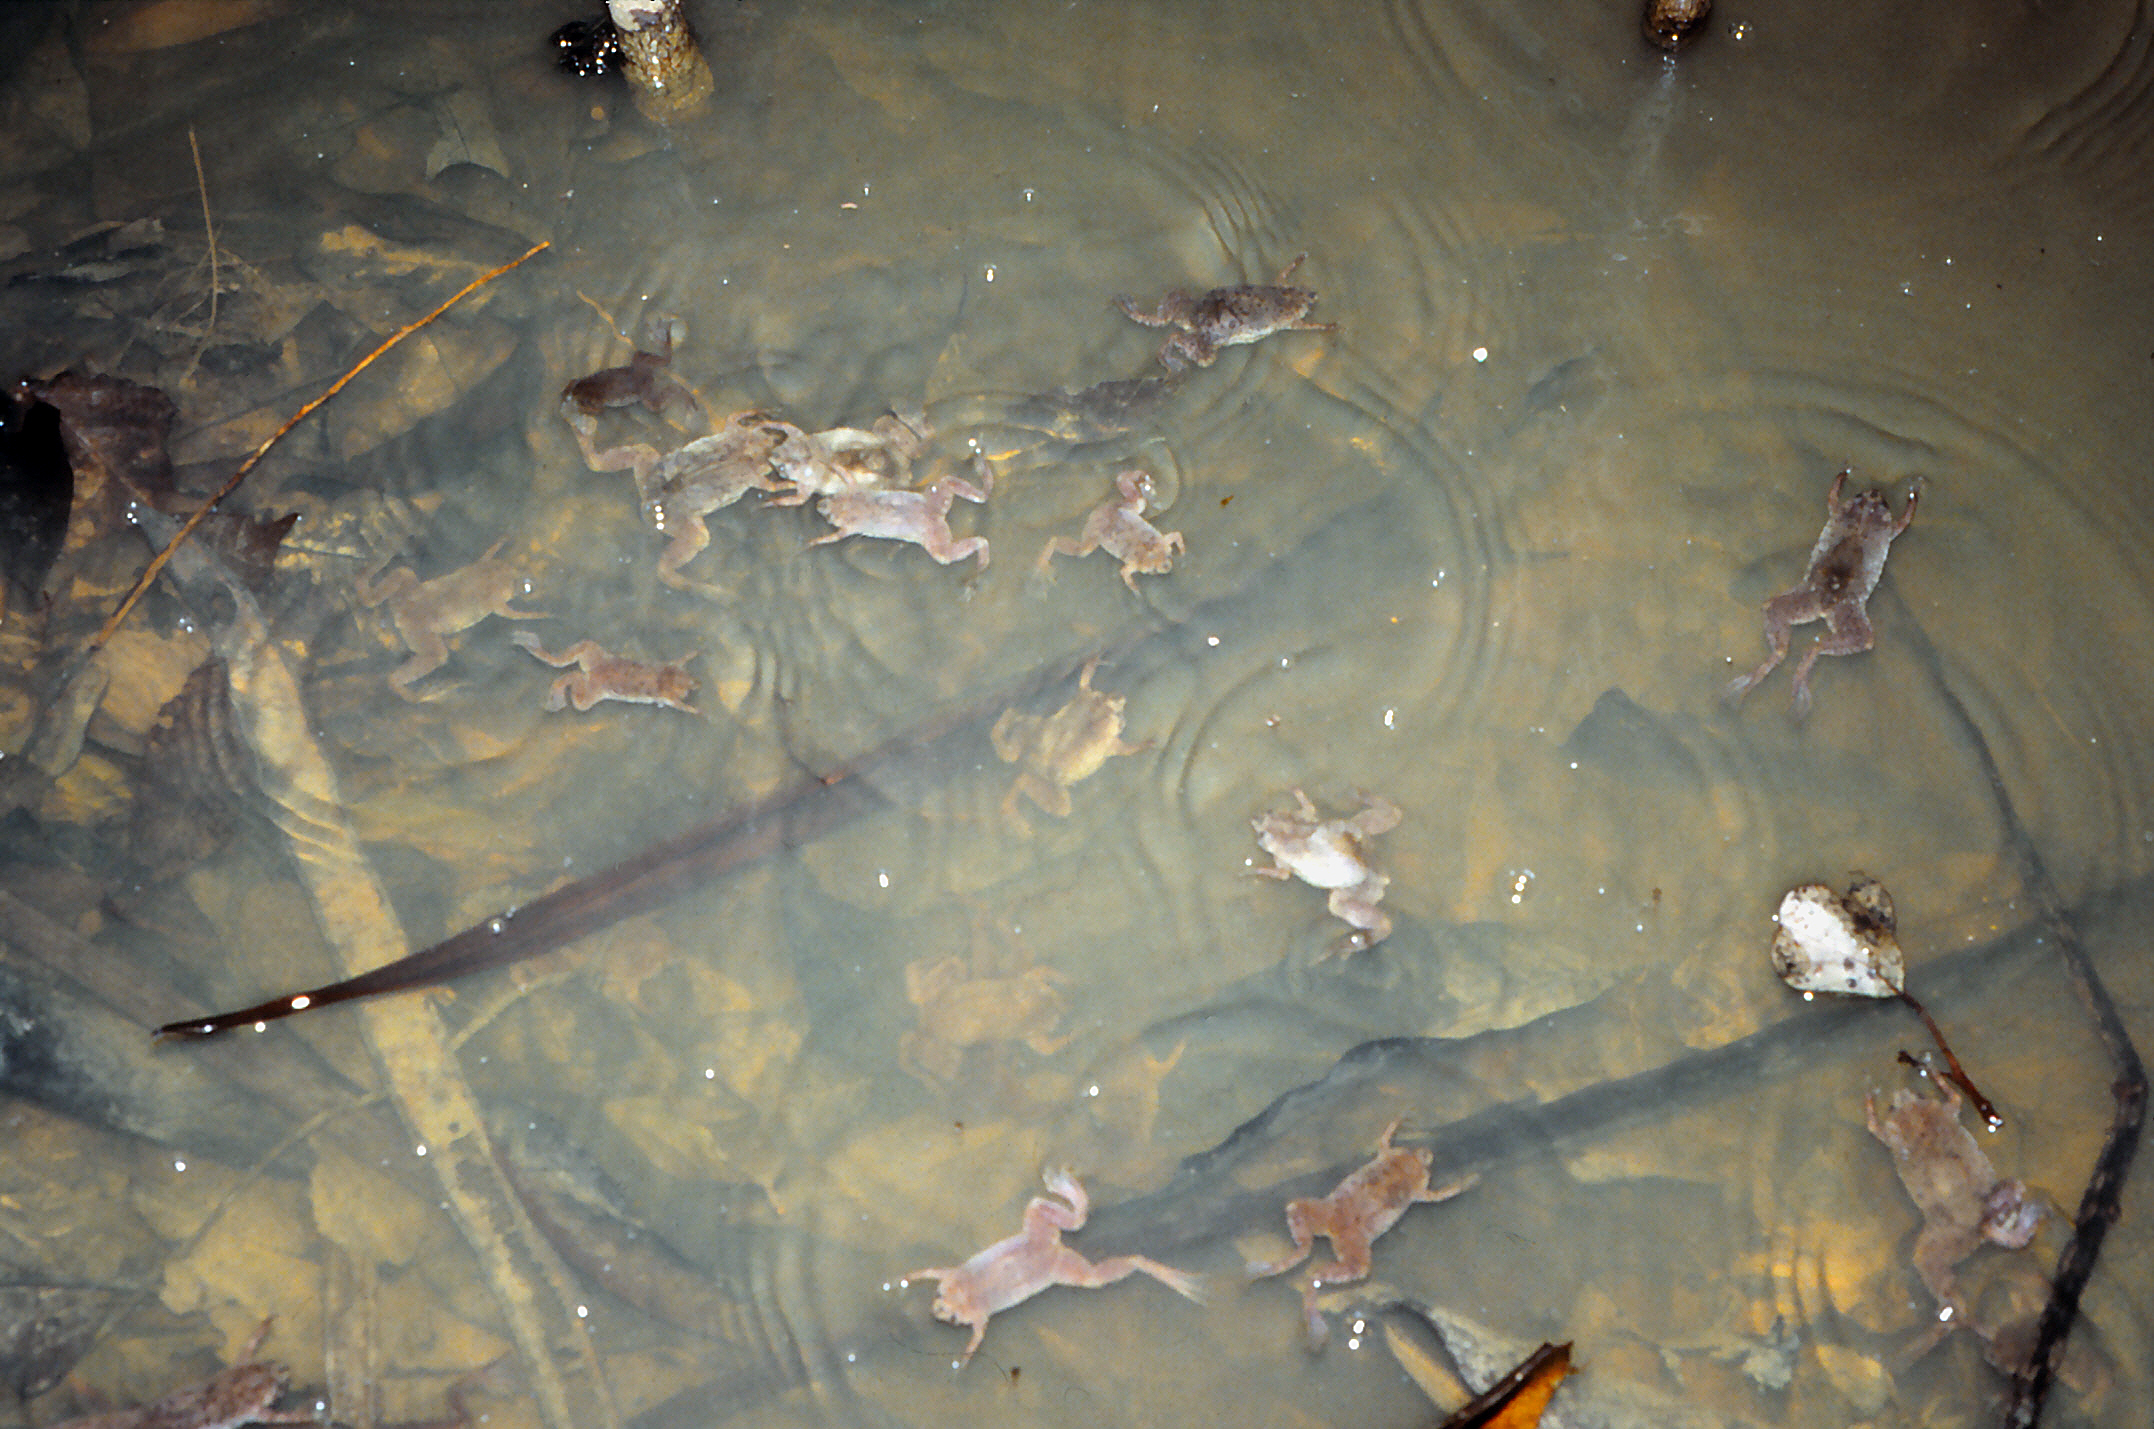 Die Wabenkröten schwimmen aufgeregt im Tümpel umher, weil das Blattnest eines Makifrosches aufgeplatzt ist und die Kaulquappen ins Wasser springen